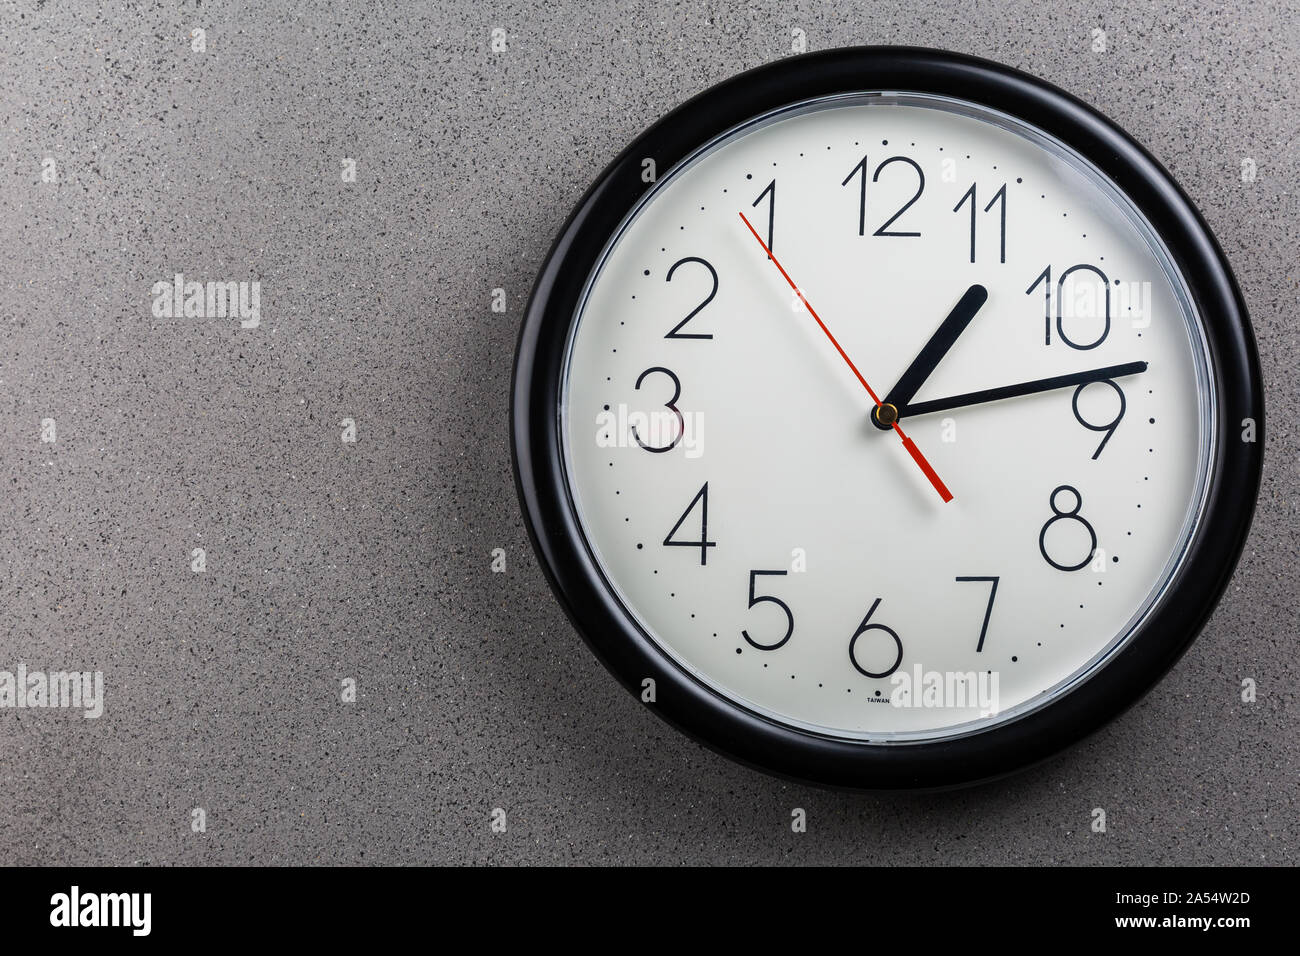 Drehen Sie die Zeit zurück - Begriff der Uhr rückwärts drehen  Stockfotografie - Alamy